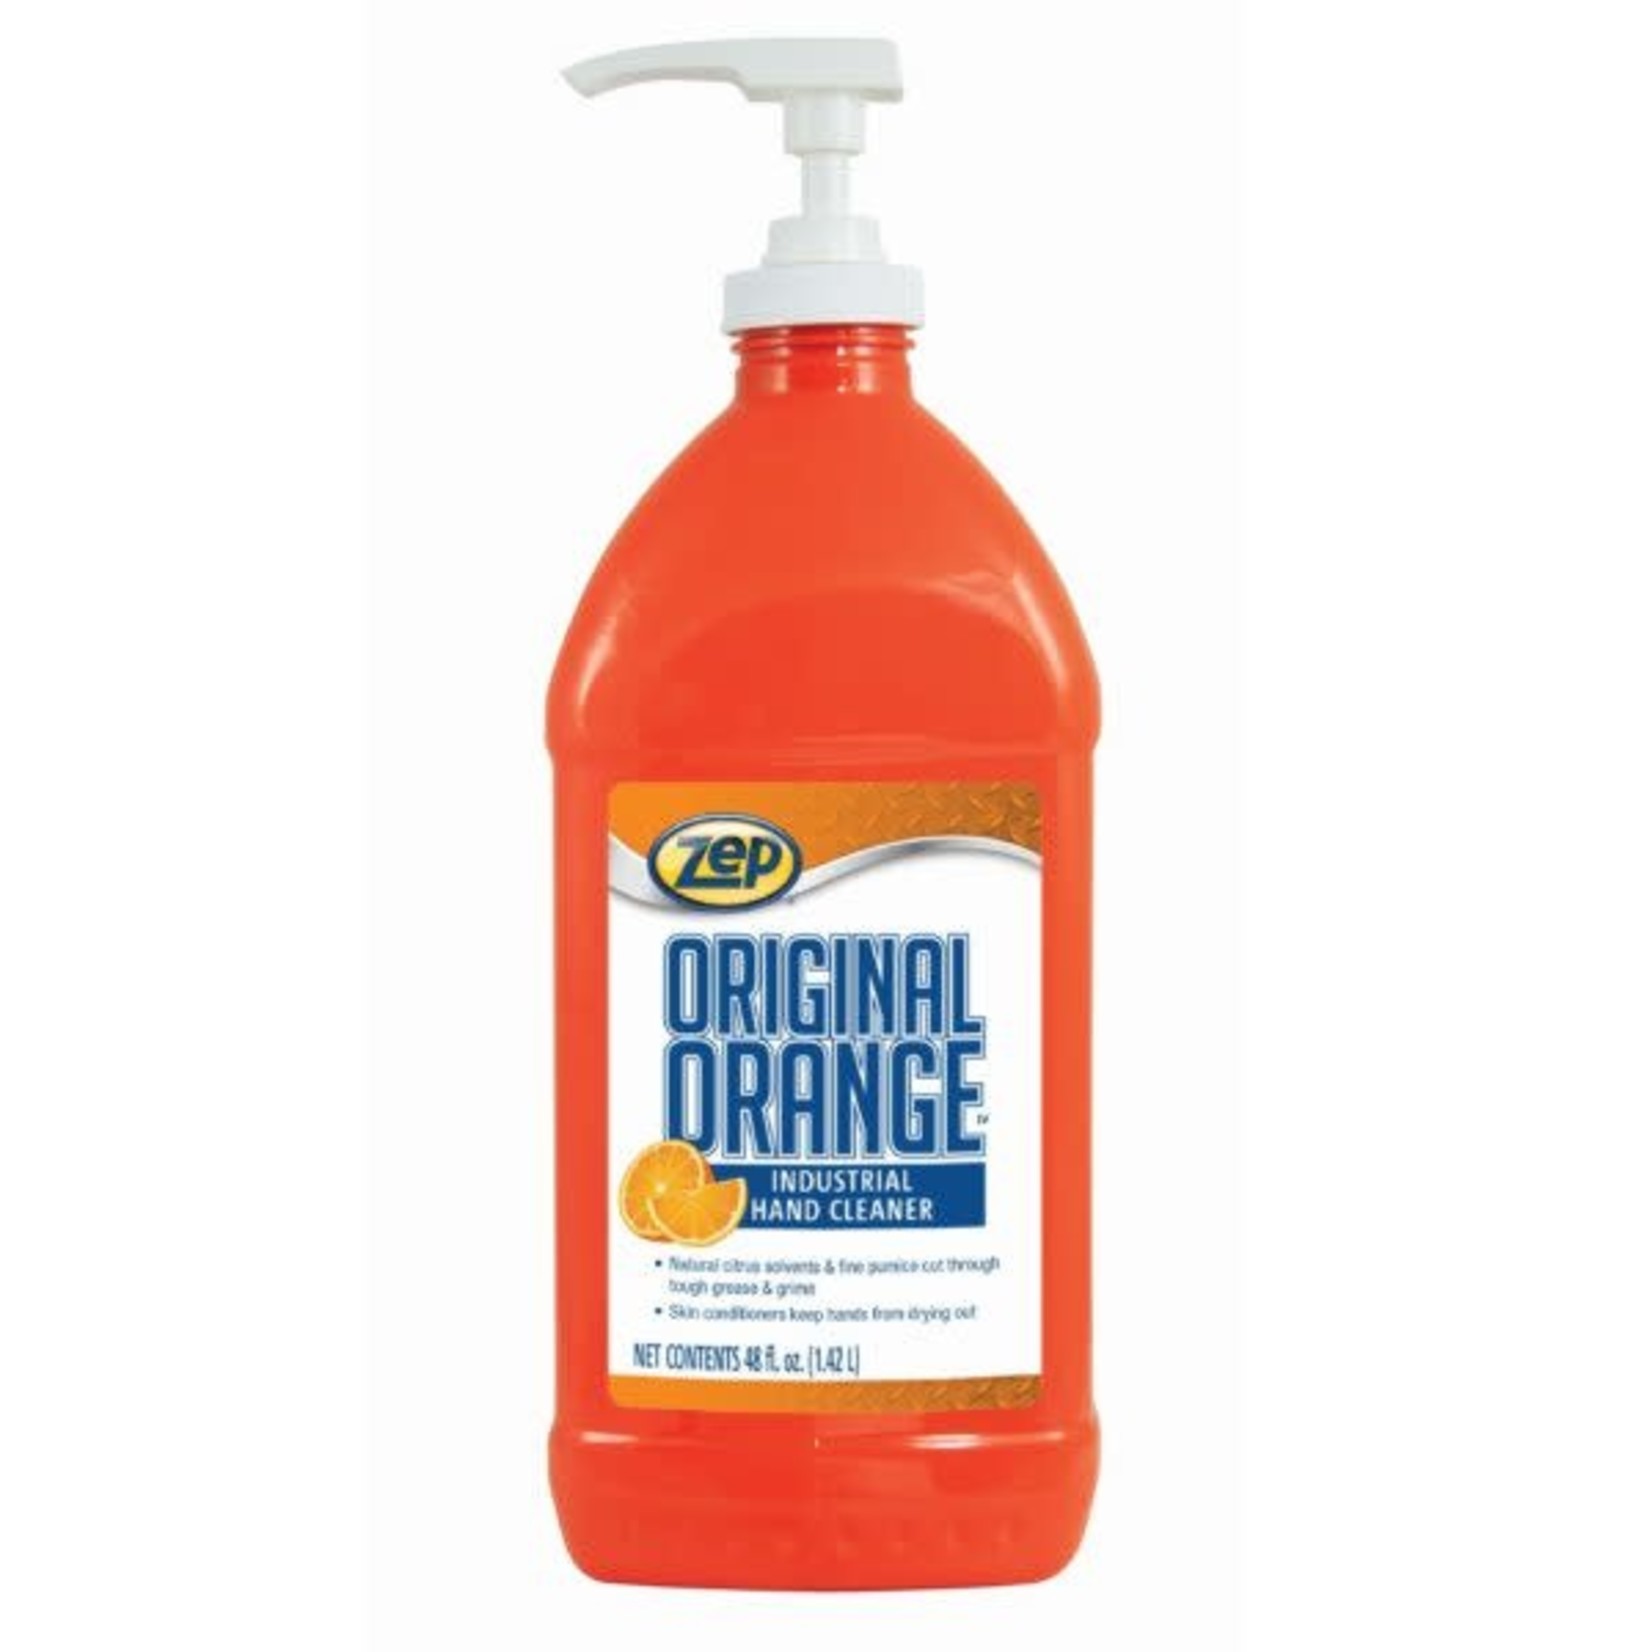 Zep Original Orange Industrial Hand Cleaner